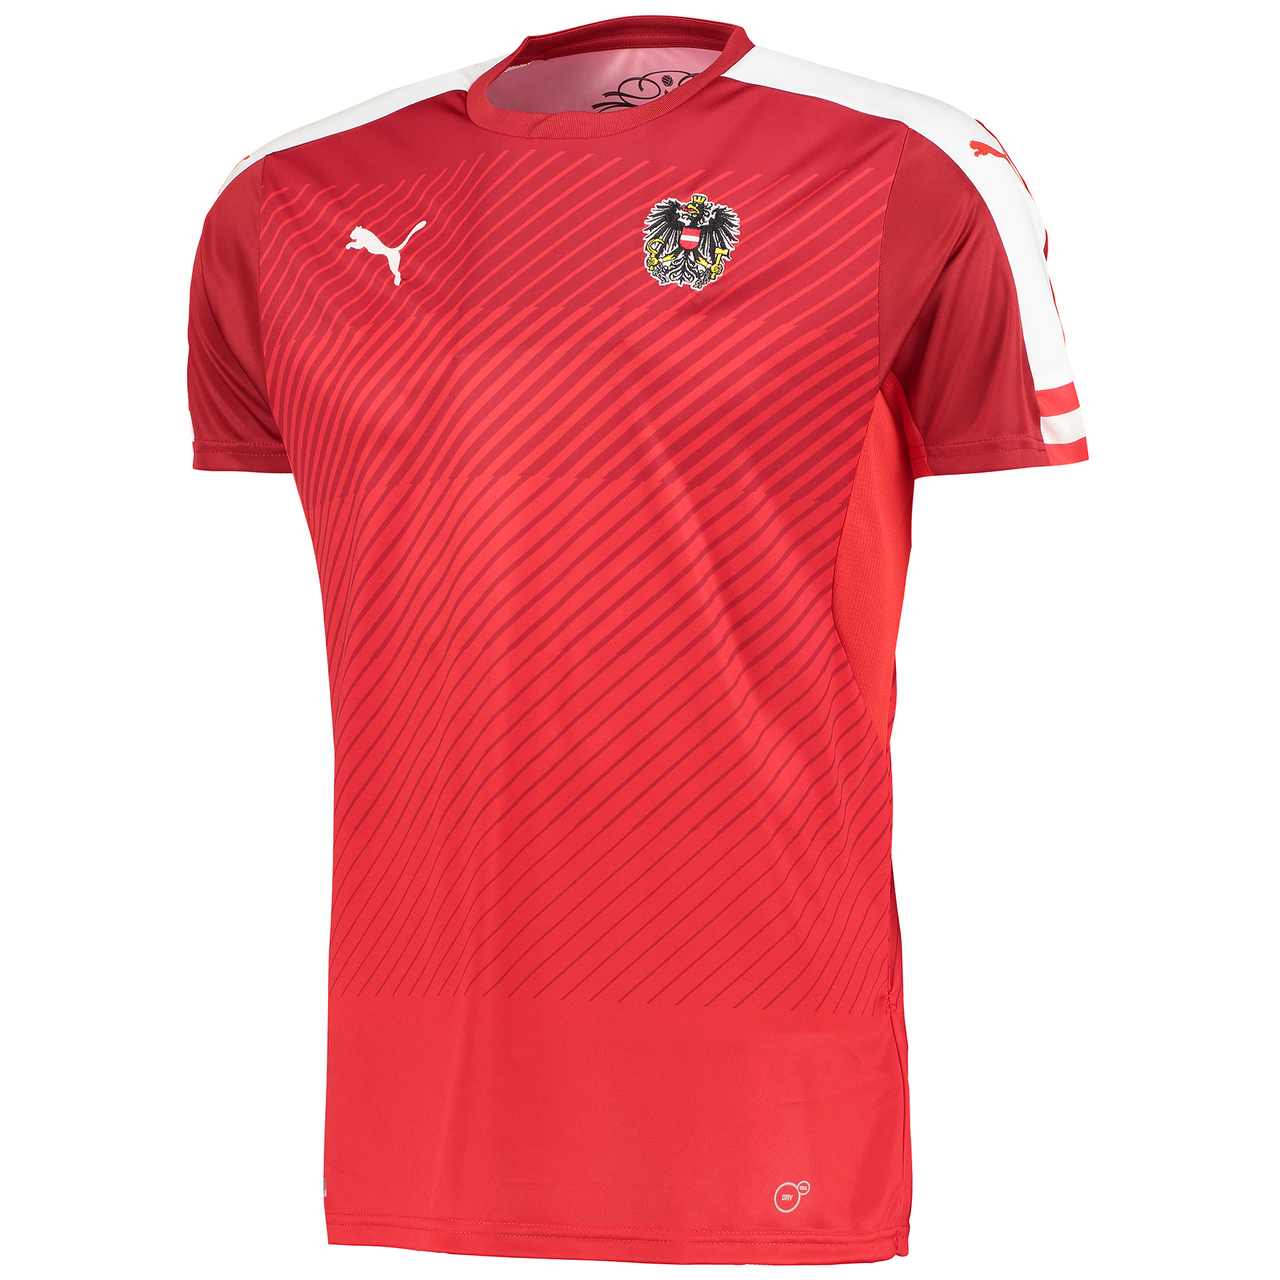 Austria 2016 Puma Home Football Shirt 